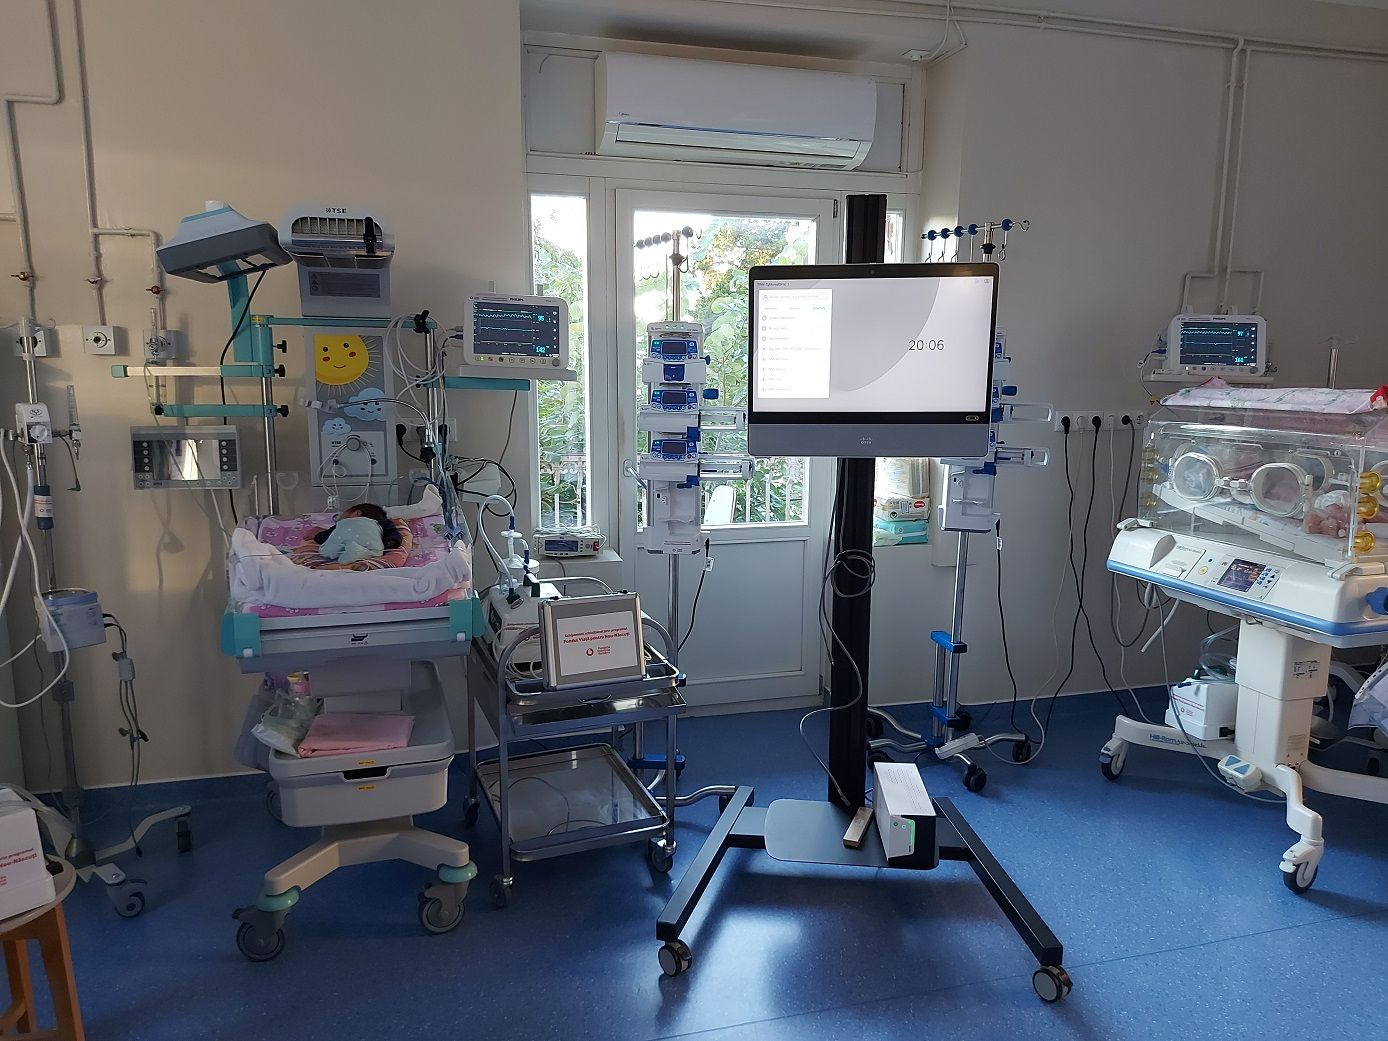 Secția de Neonatologie a Spitalului Județean Mureș, dotată cu aparatură modernă